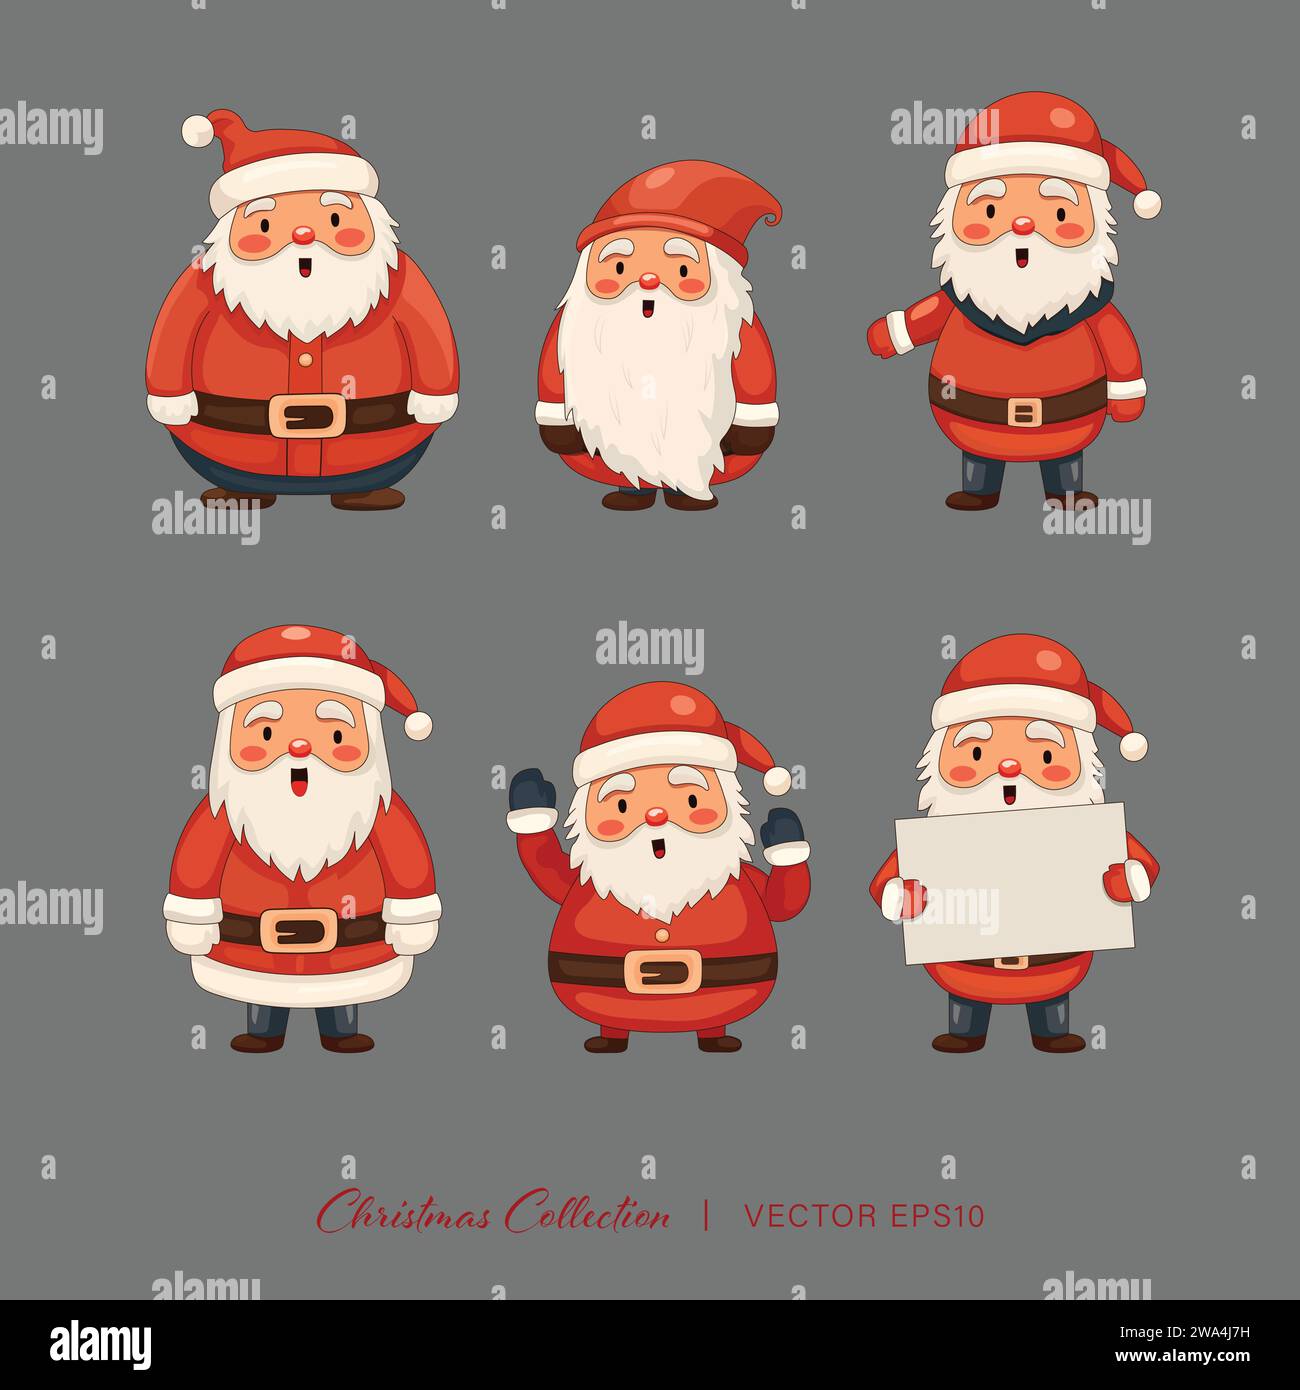 Niedliche Santa Claus Zeichentrickweihnachtskollektion, Vektor-Design Stock Vektor